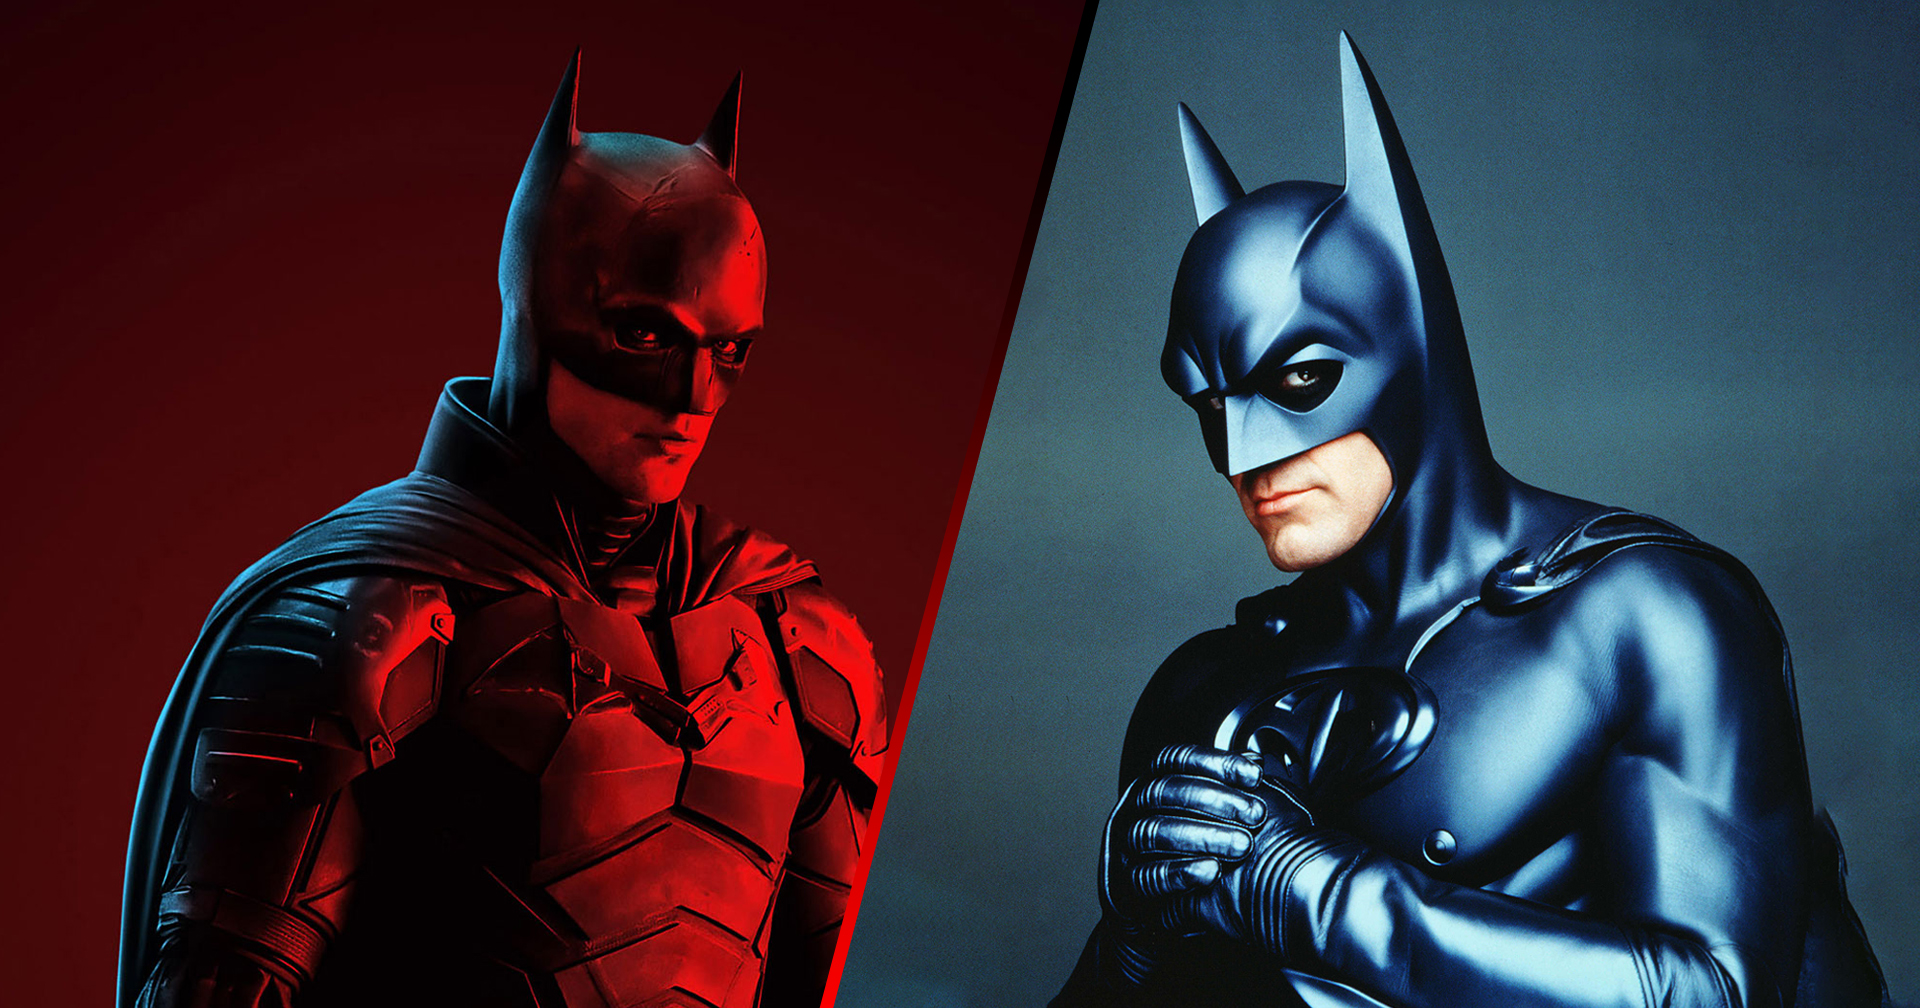 ‘โรเบิร์ด แพตทินสัน’ เผย ต้องใส่ชุด Batsuit ‘มีหัวนม’ ใน ‘Batman & Robin’ ตอนออดิชันหน้ากล้อง ‘The Batman’